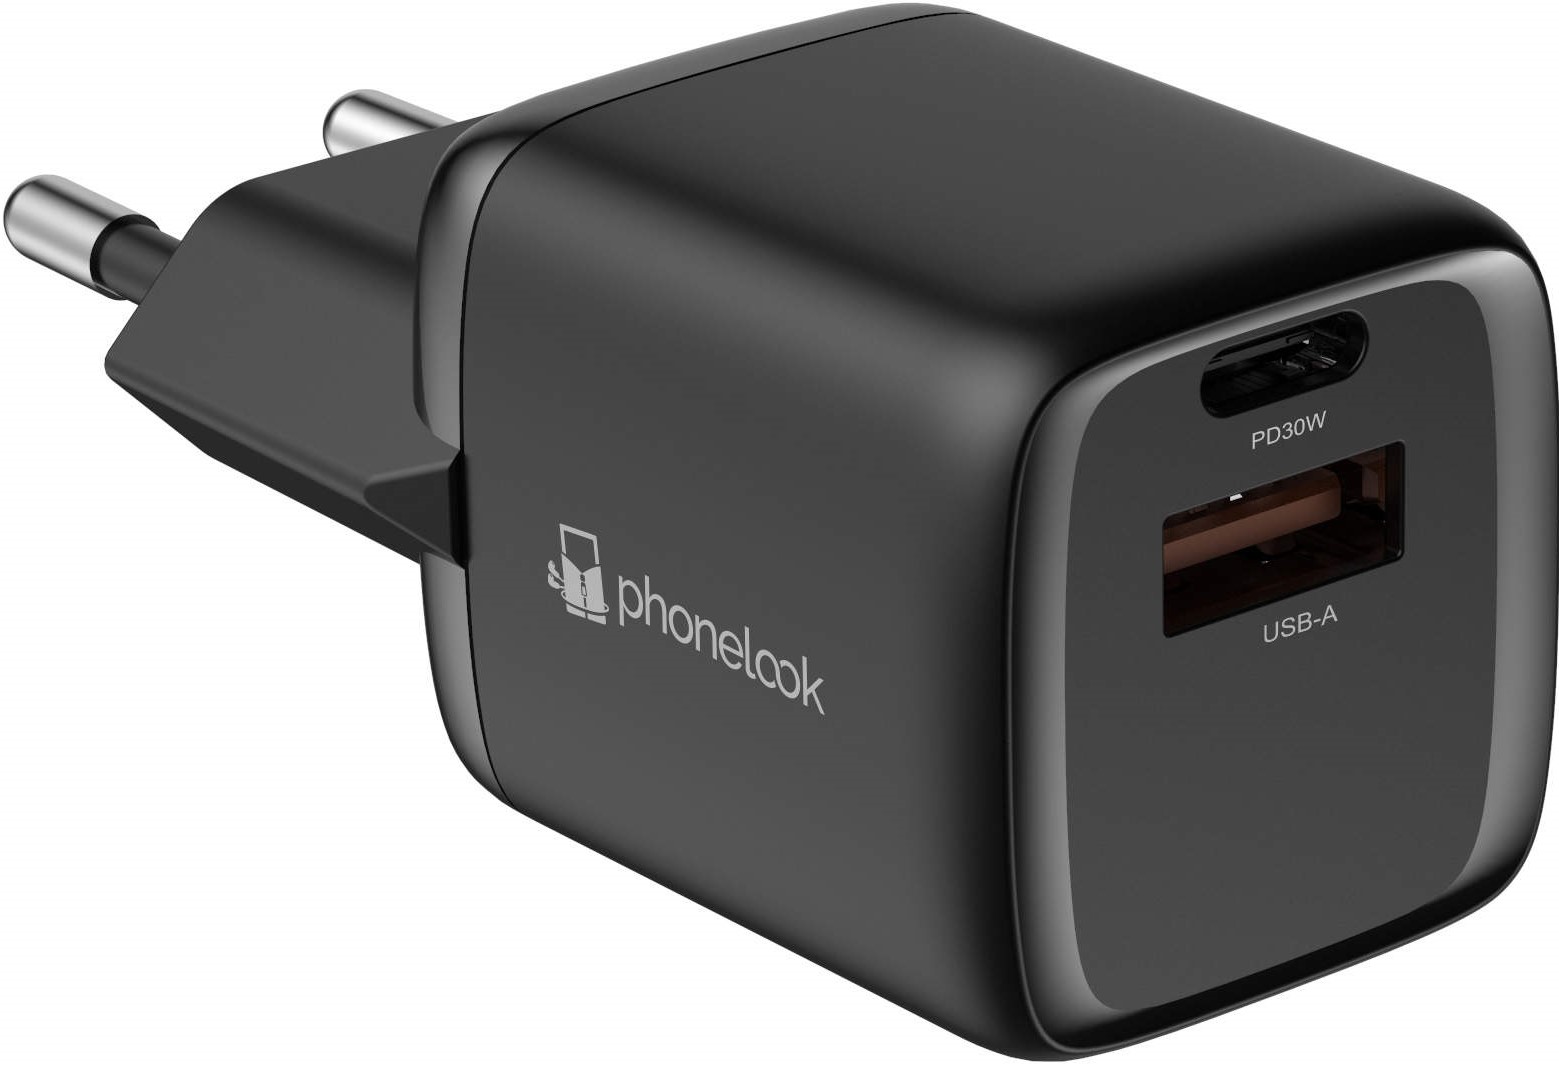 Chargeur puissant secteur Nano 30W USB-A et USB-C avec Power Delivery  PhoneLook - Blanc - Acheter sur PhoneLook